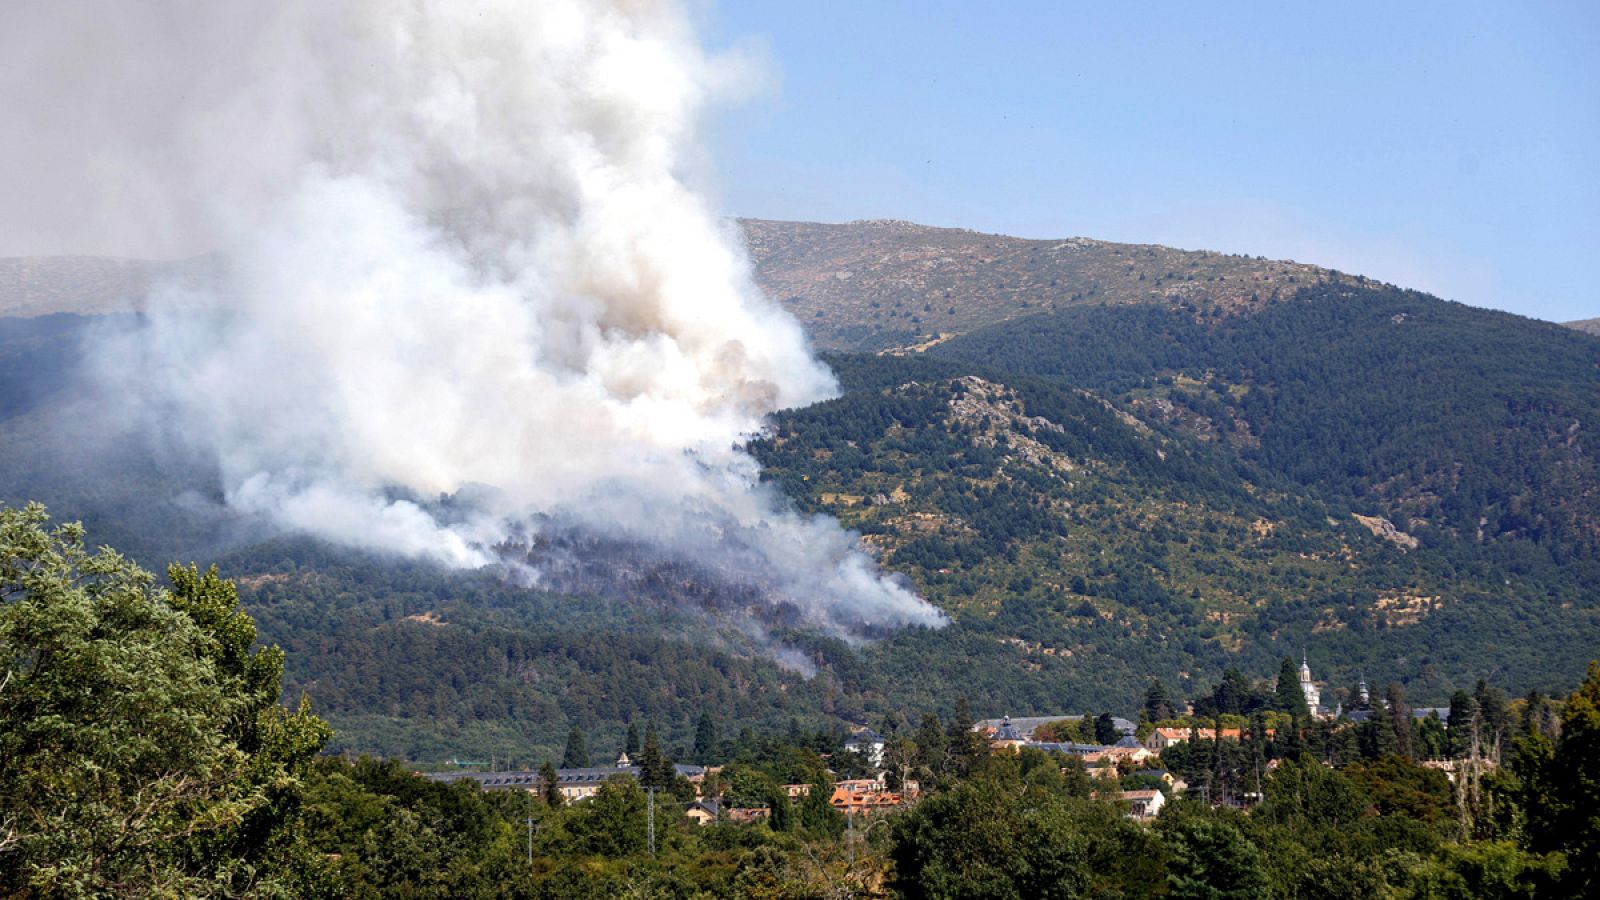 El incendio declarado en la provincia de Segovia está afectando a una zona de pinares próxima al Real Sitio de San Ildefonso-La Granja